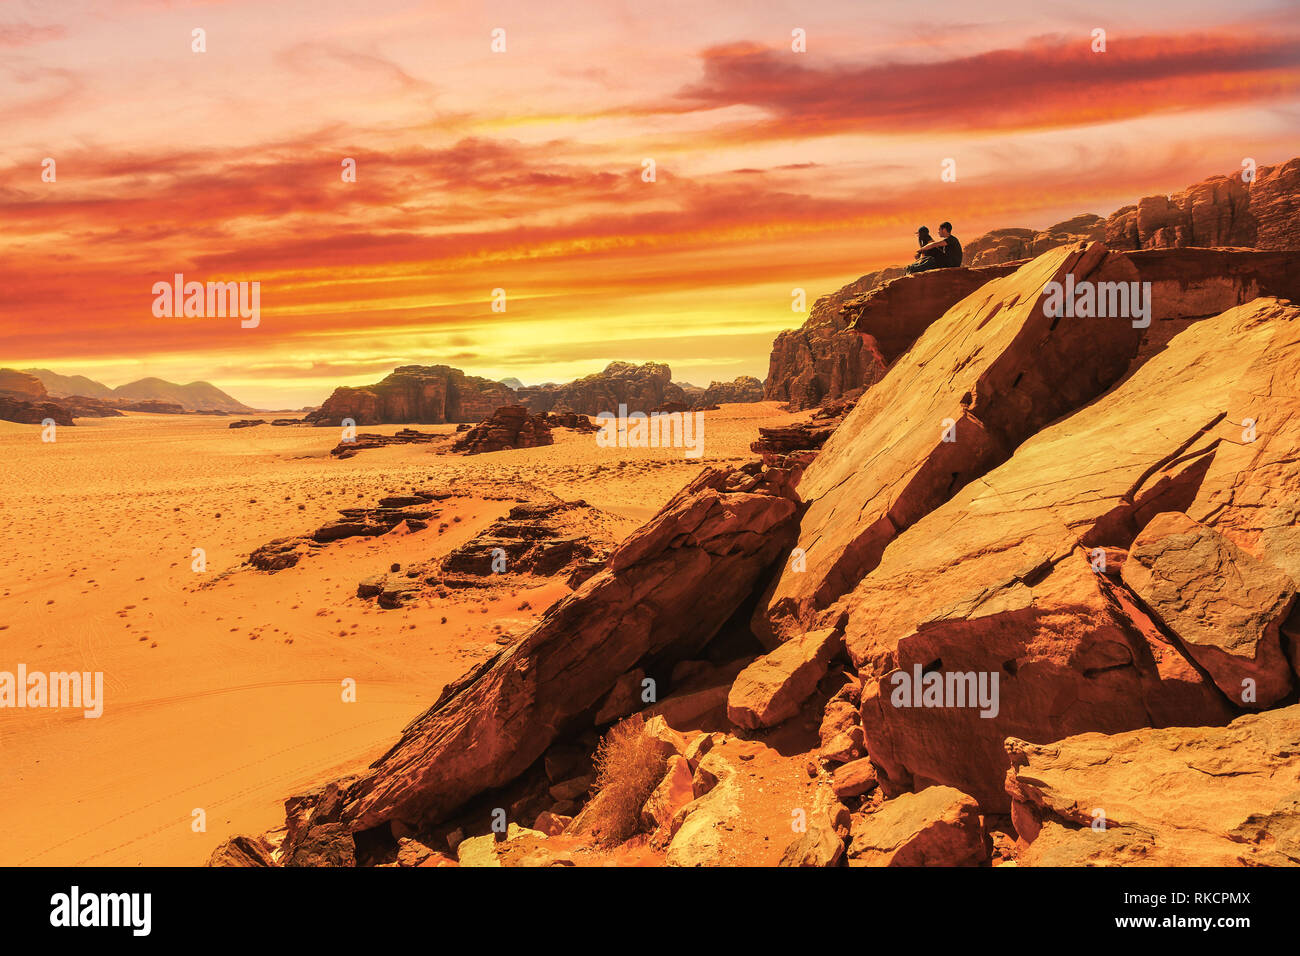 Paar zusammen sitzen auf Wüste Tal Landschaft Sunset Orange Rot reisen Abenteuer exotischen Ort felsige Klippe Stockfoto